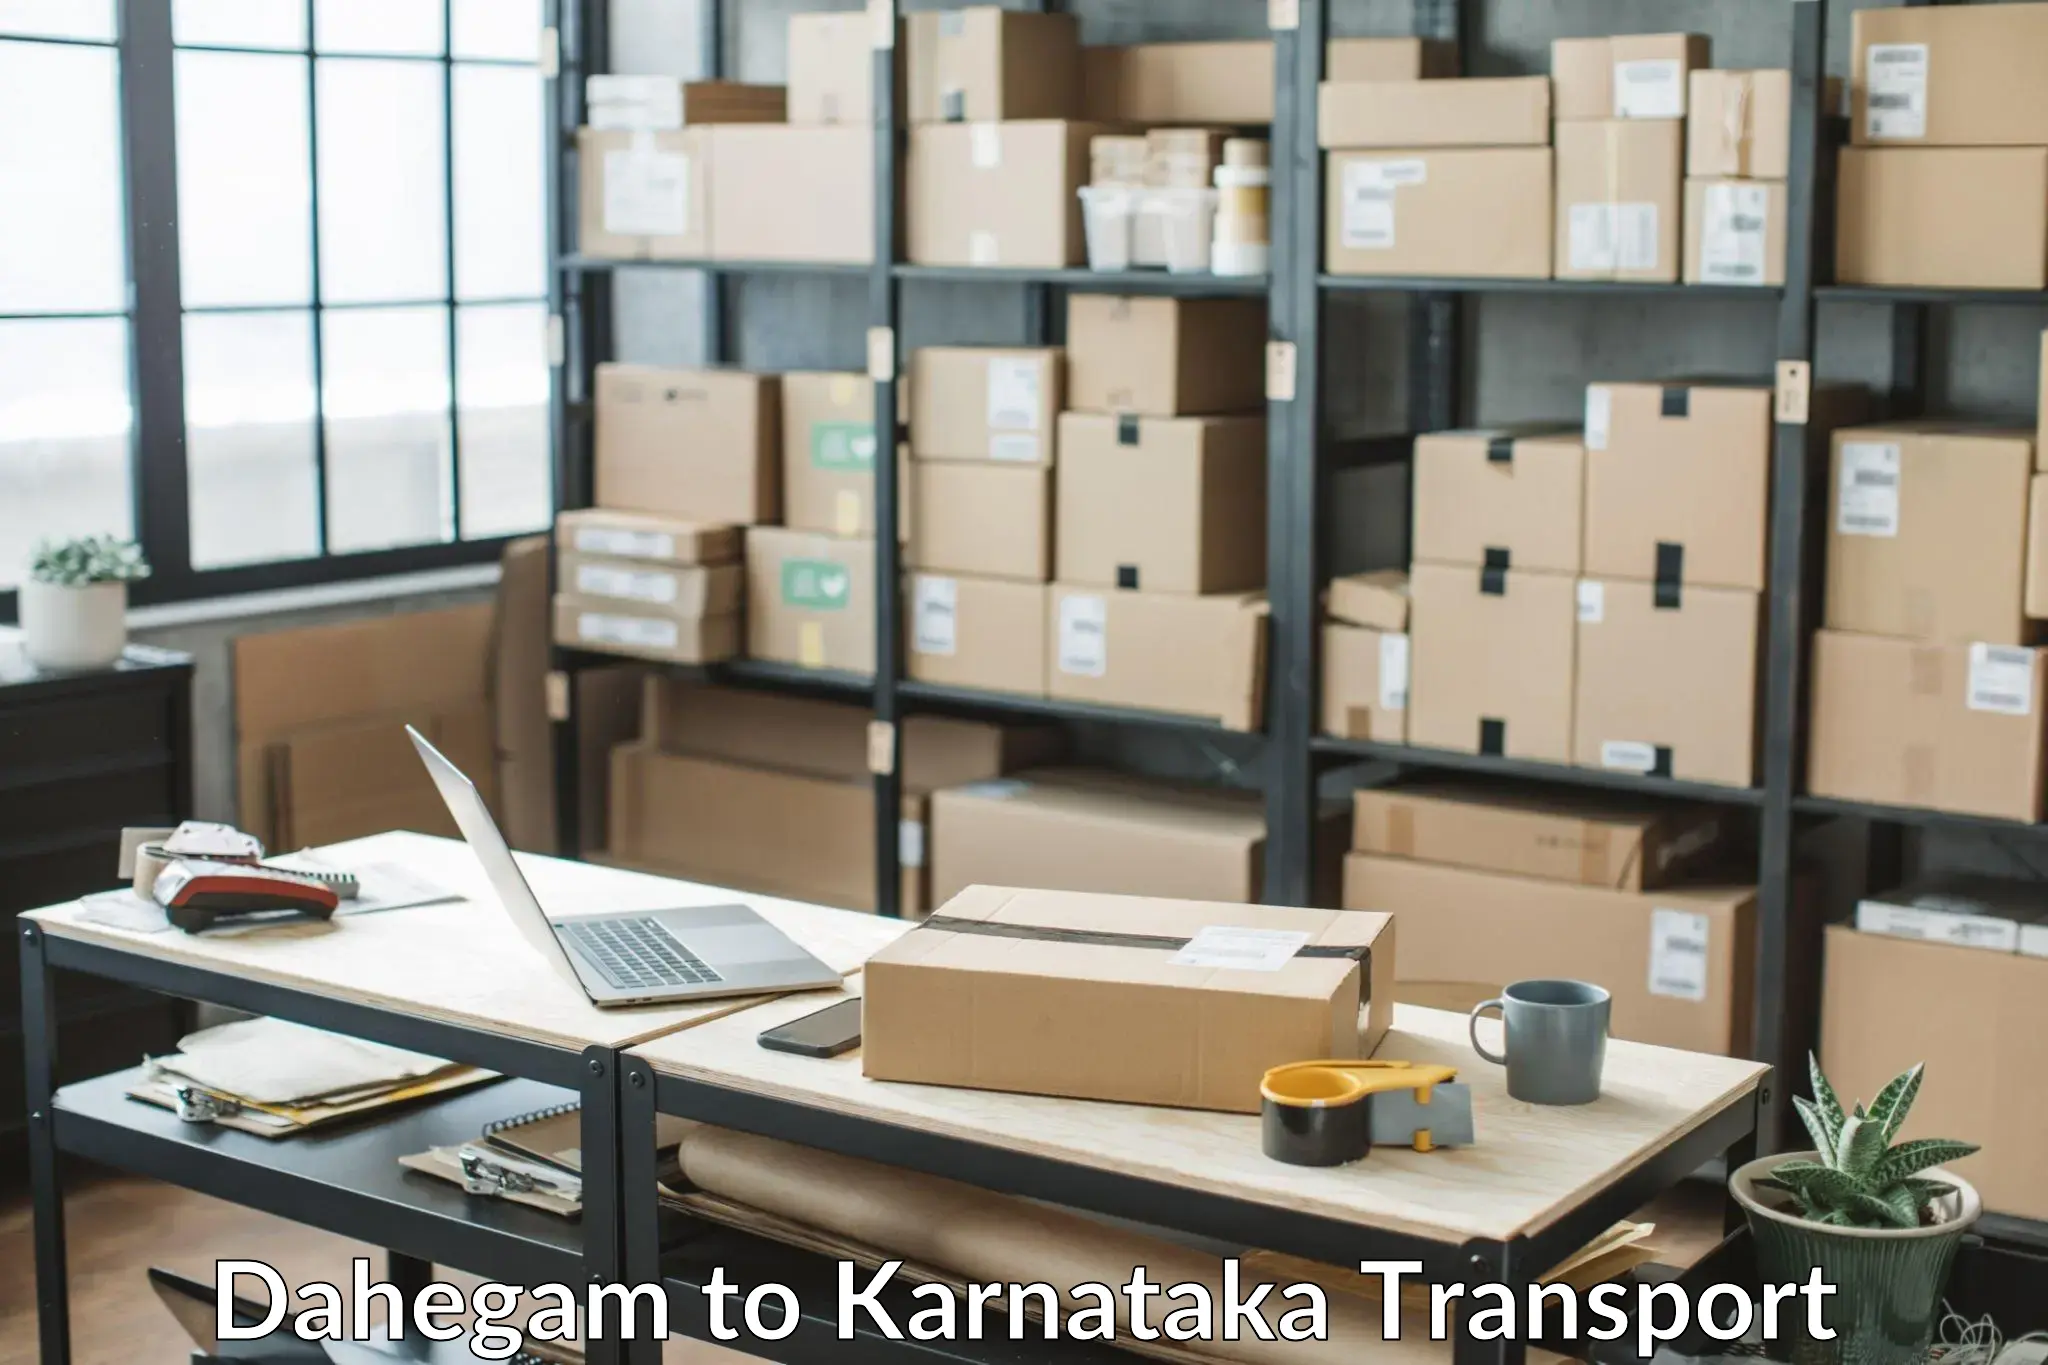 Bike shipping service Dahegam to Karnataka